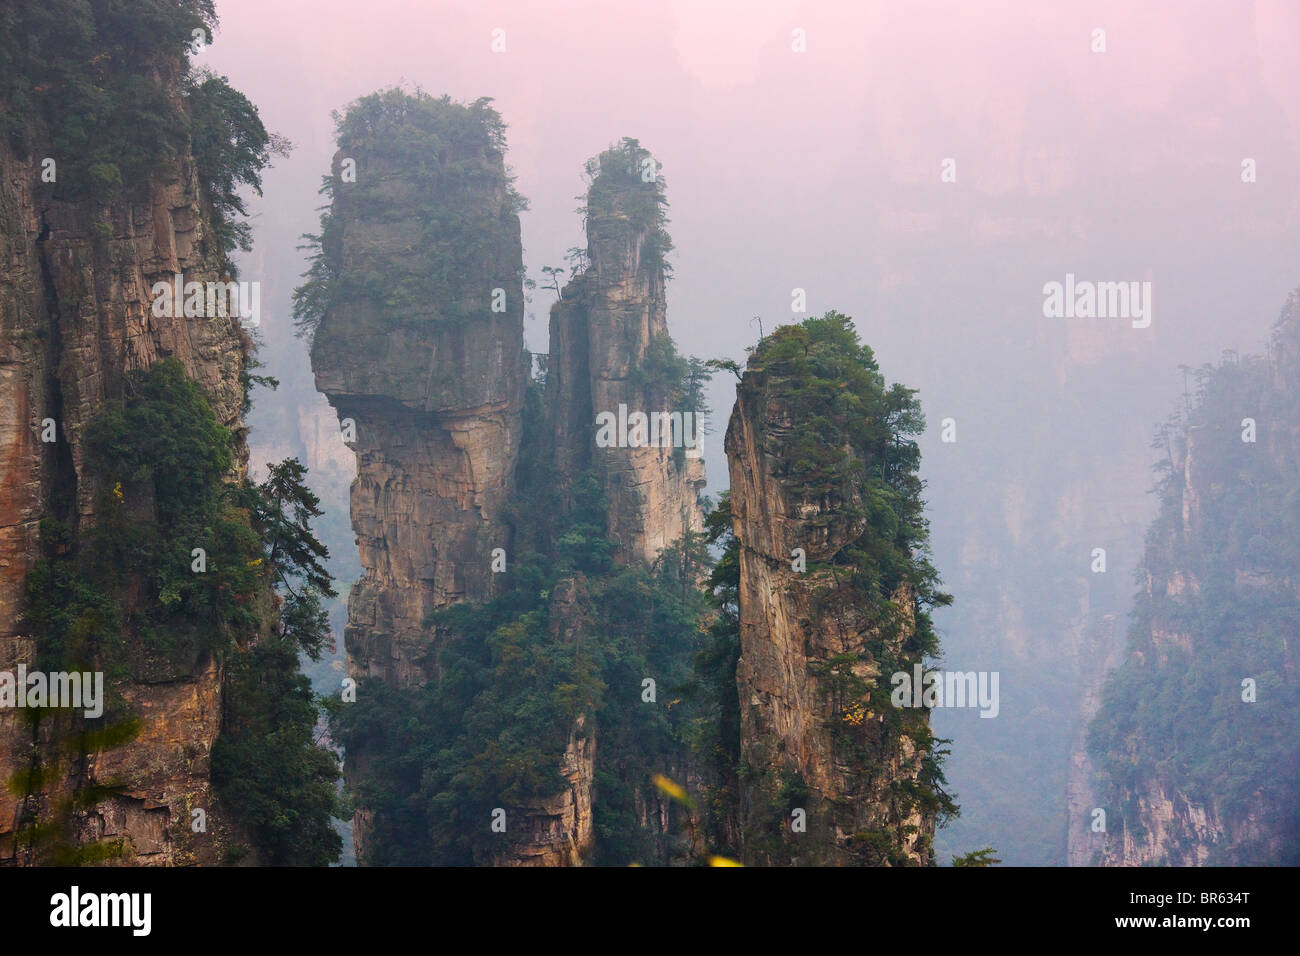 Des pics de montagne, parc forestier national de Zhangjiajie, Wulingyuan Scenic Area, Province du Hunan, Chine Banque D'Images